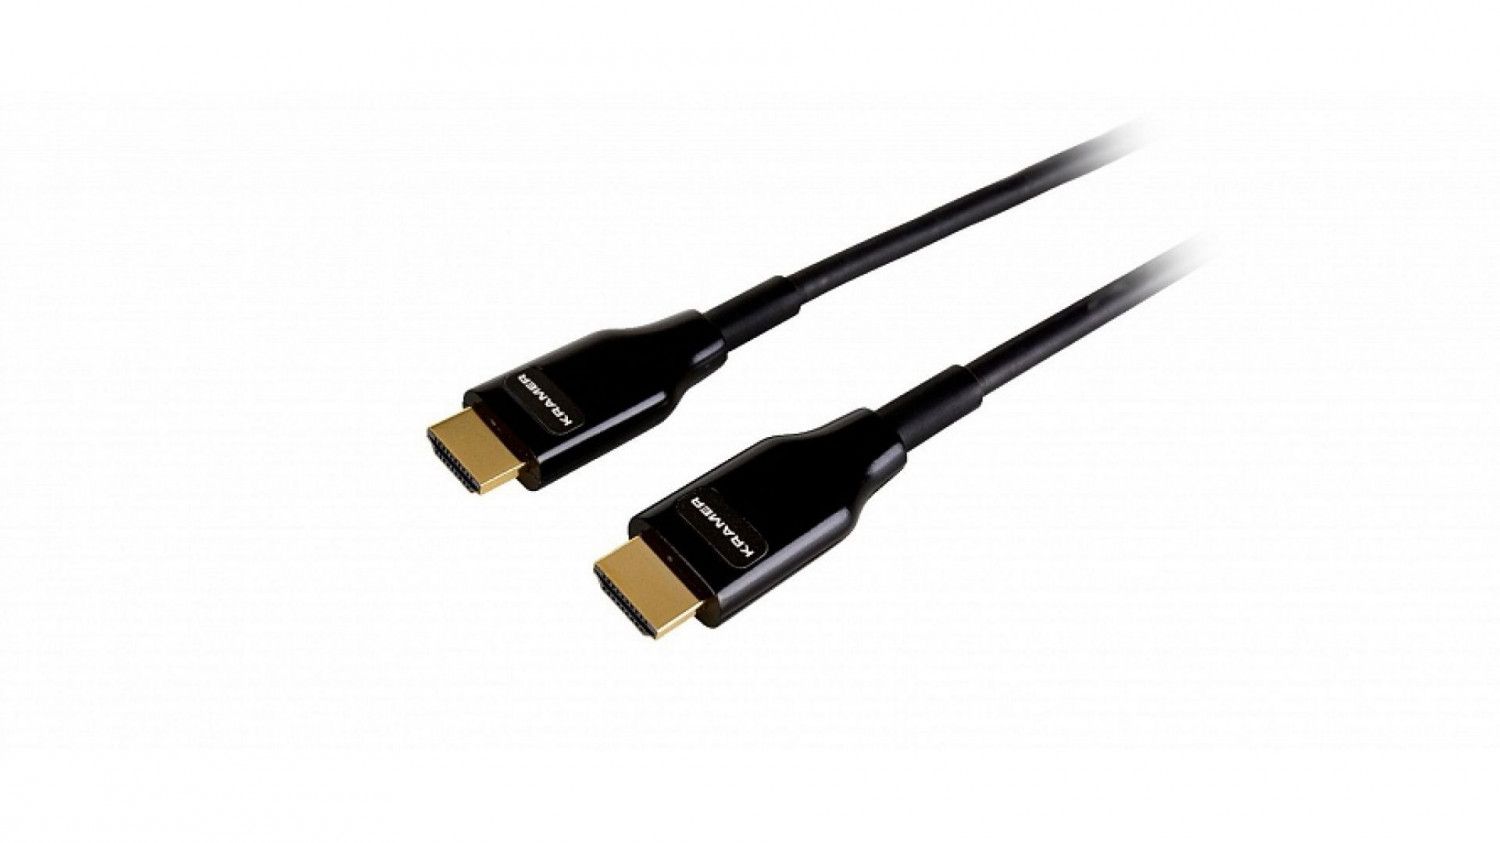 Активный малодымный армированный оптический кабель HDMI для арендных и выставочных мероприятий, поддержка 4К 60 Гц (4:4:4), 70 м Kramer Electronics CRS-PlugNView-H-230